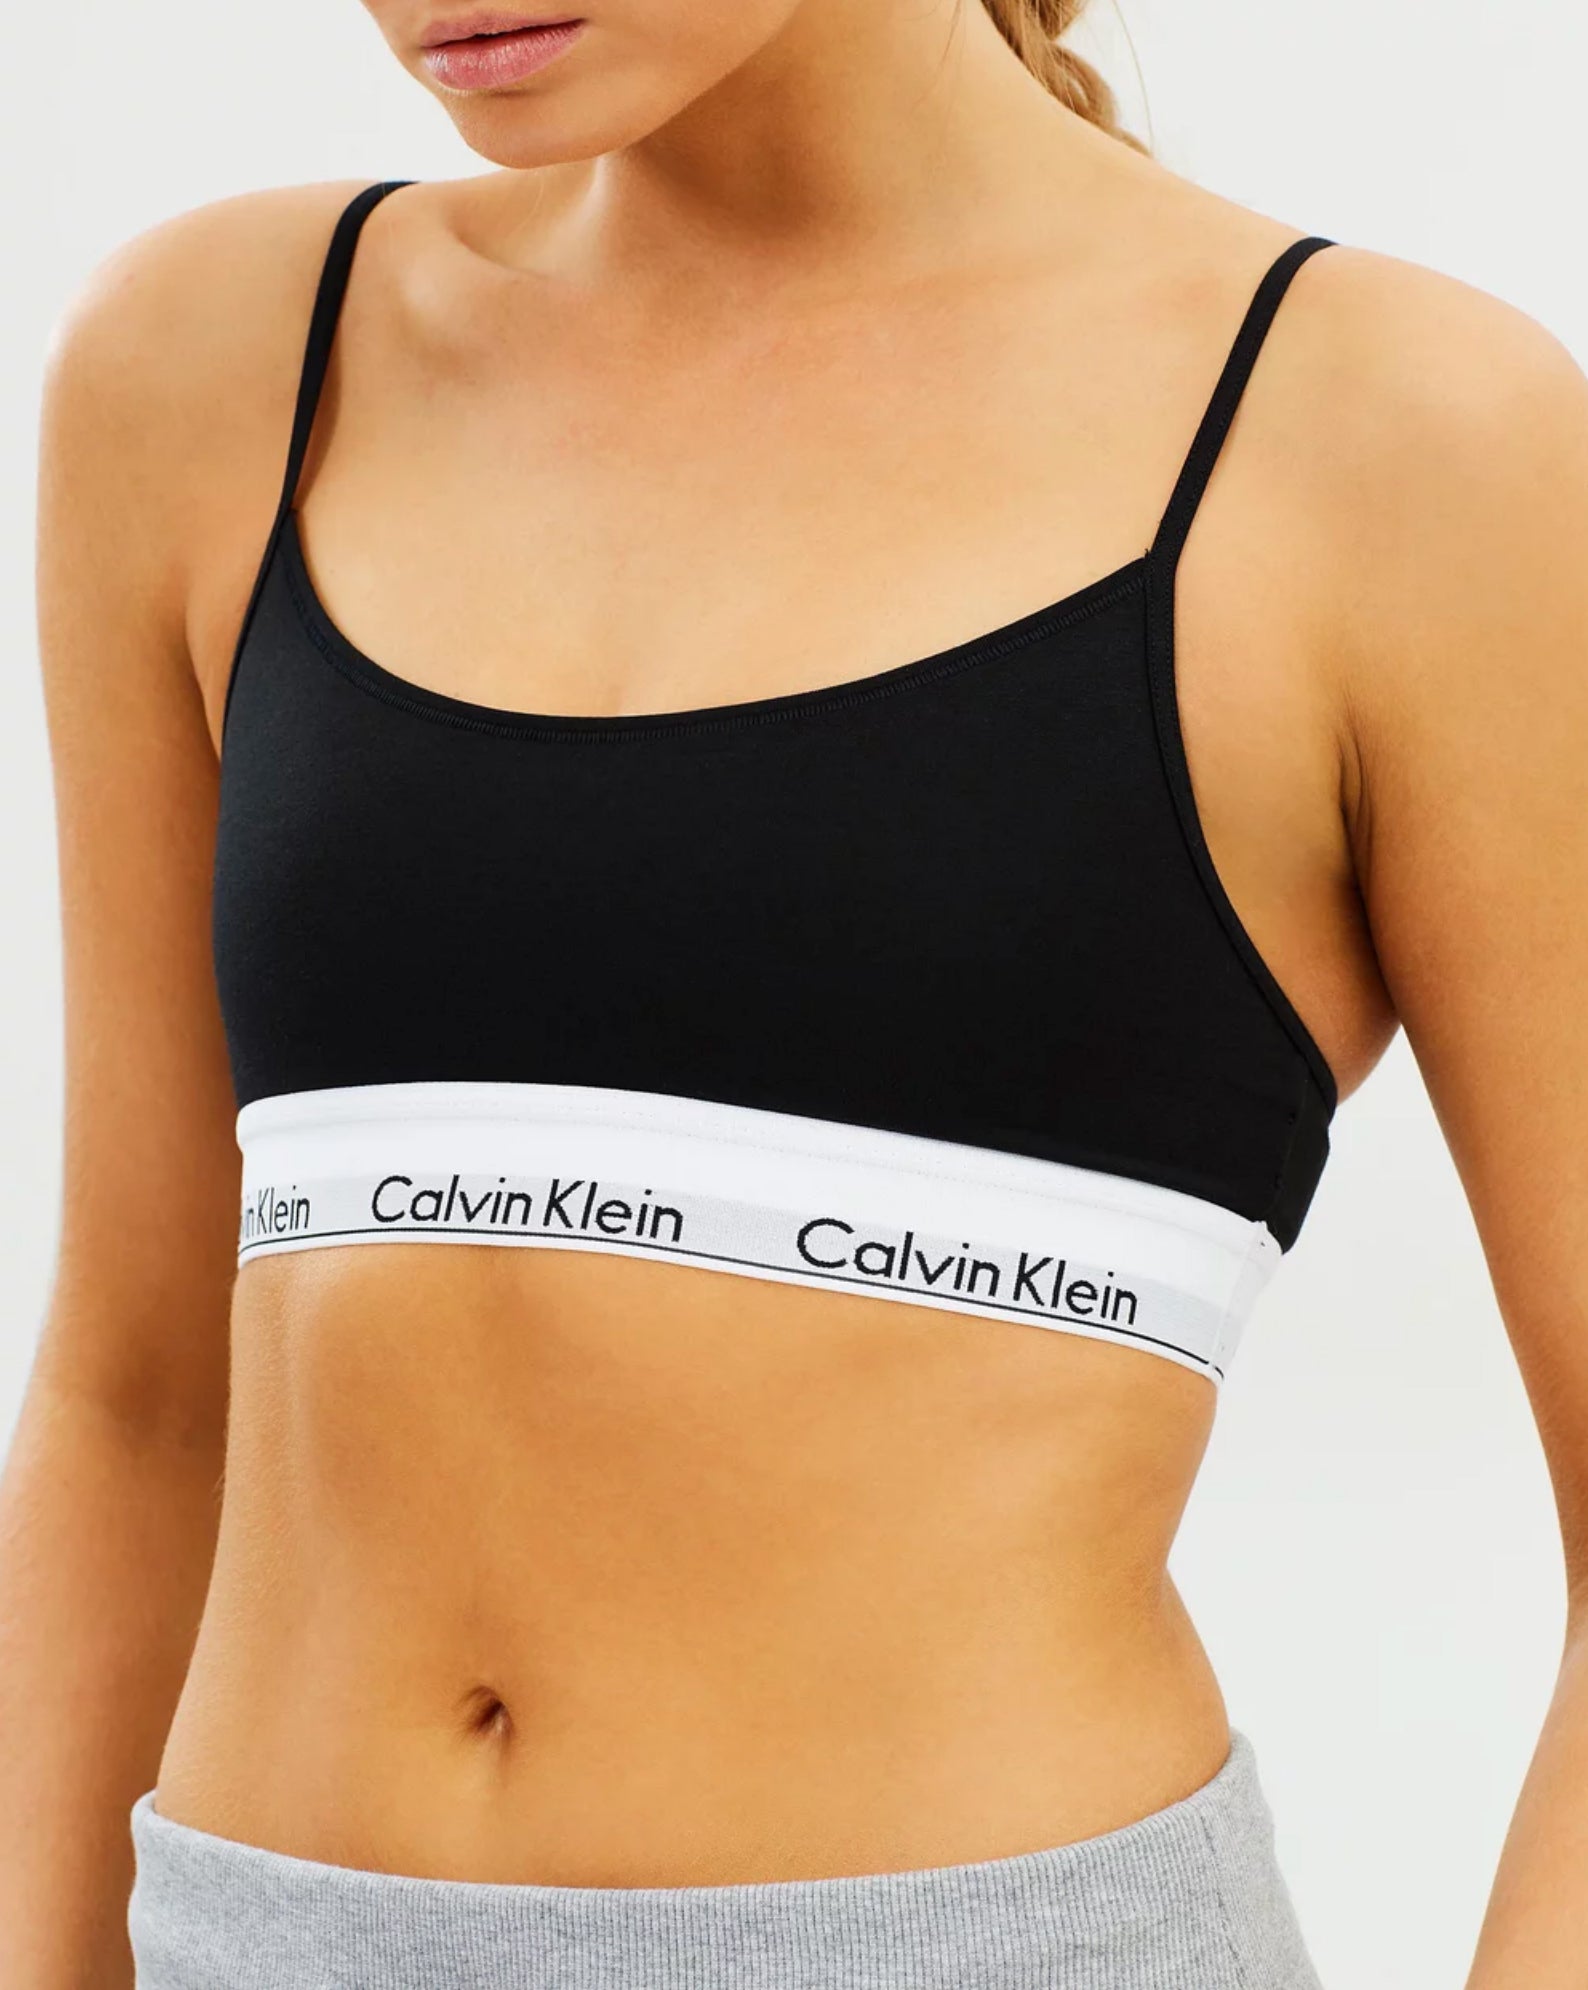 Calvin Klein - Black modern cotton bralette crop top bra